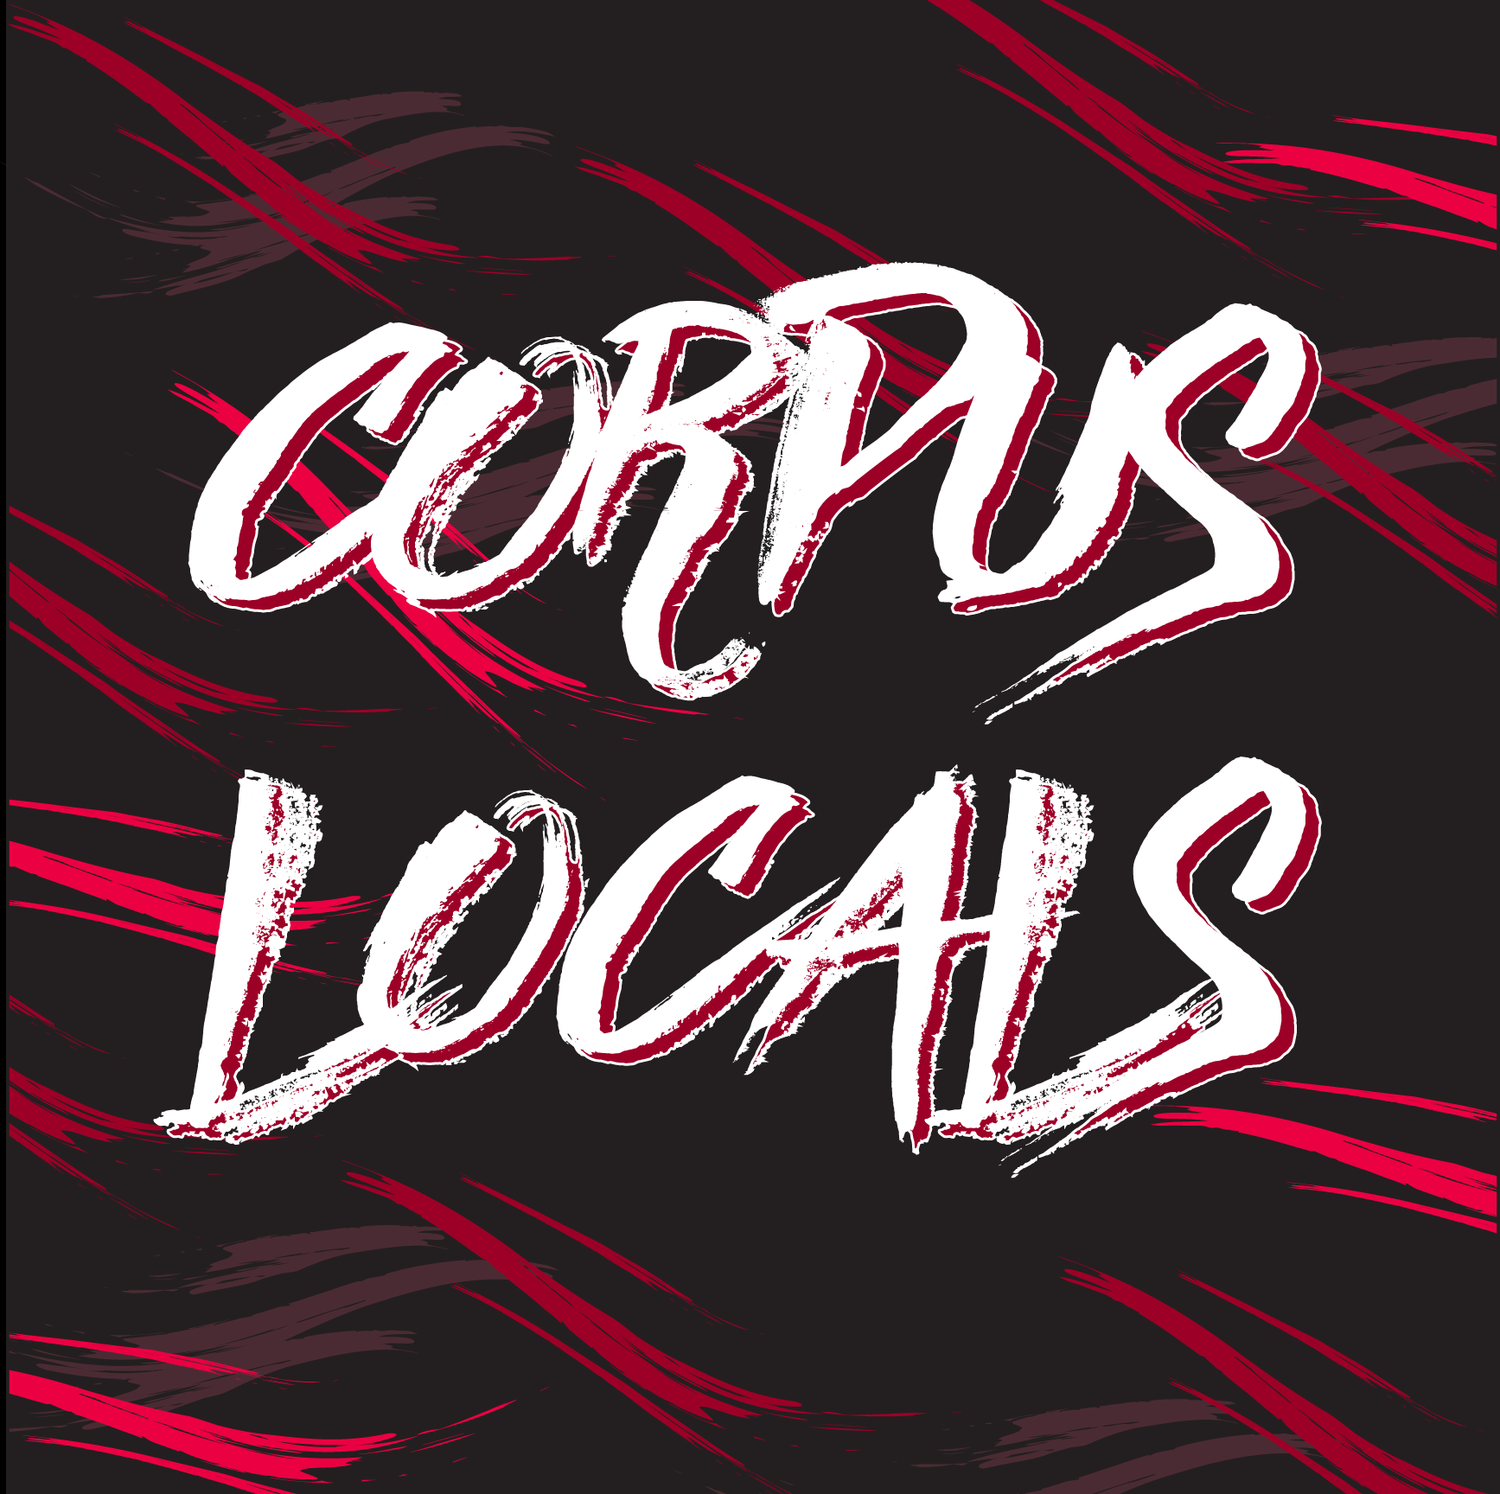 Corpus Locals